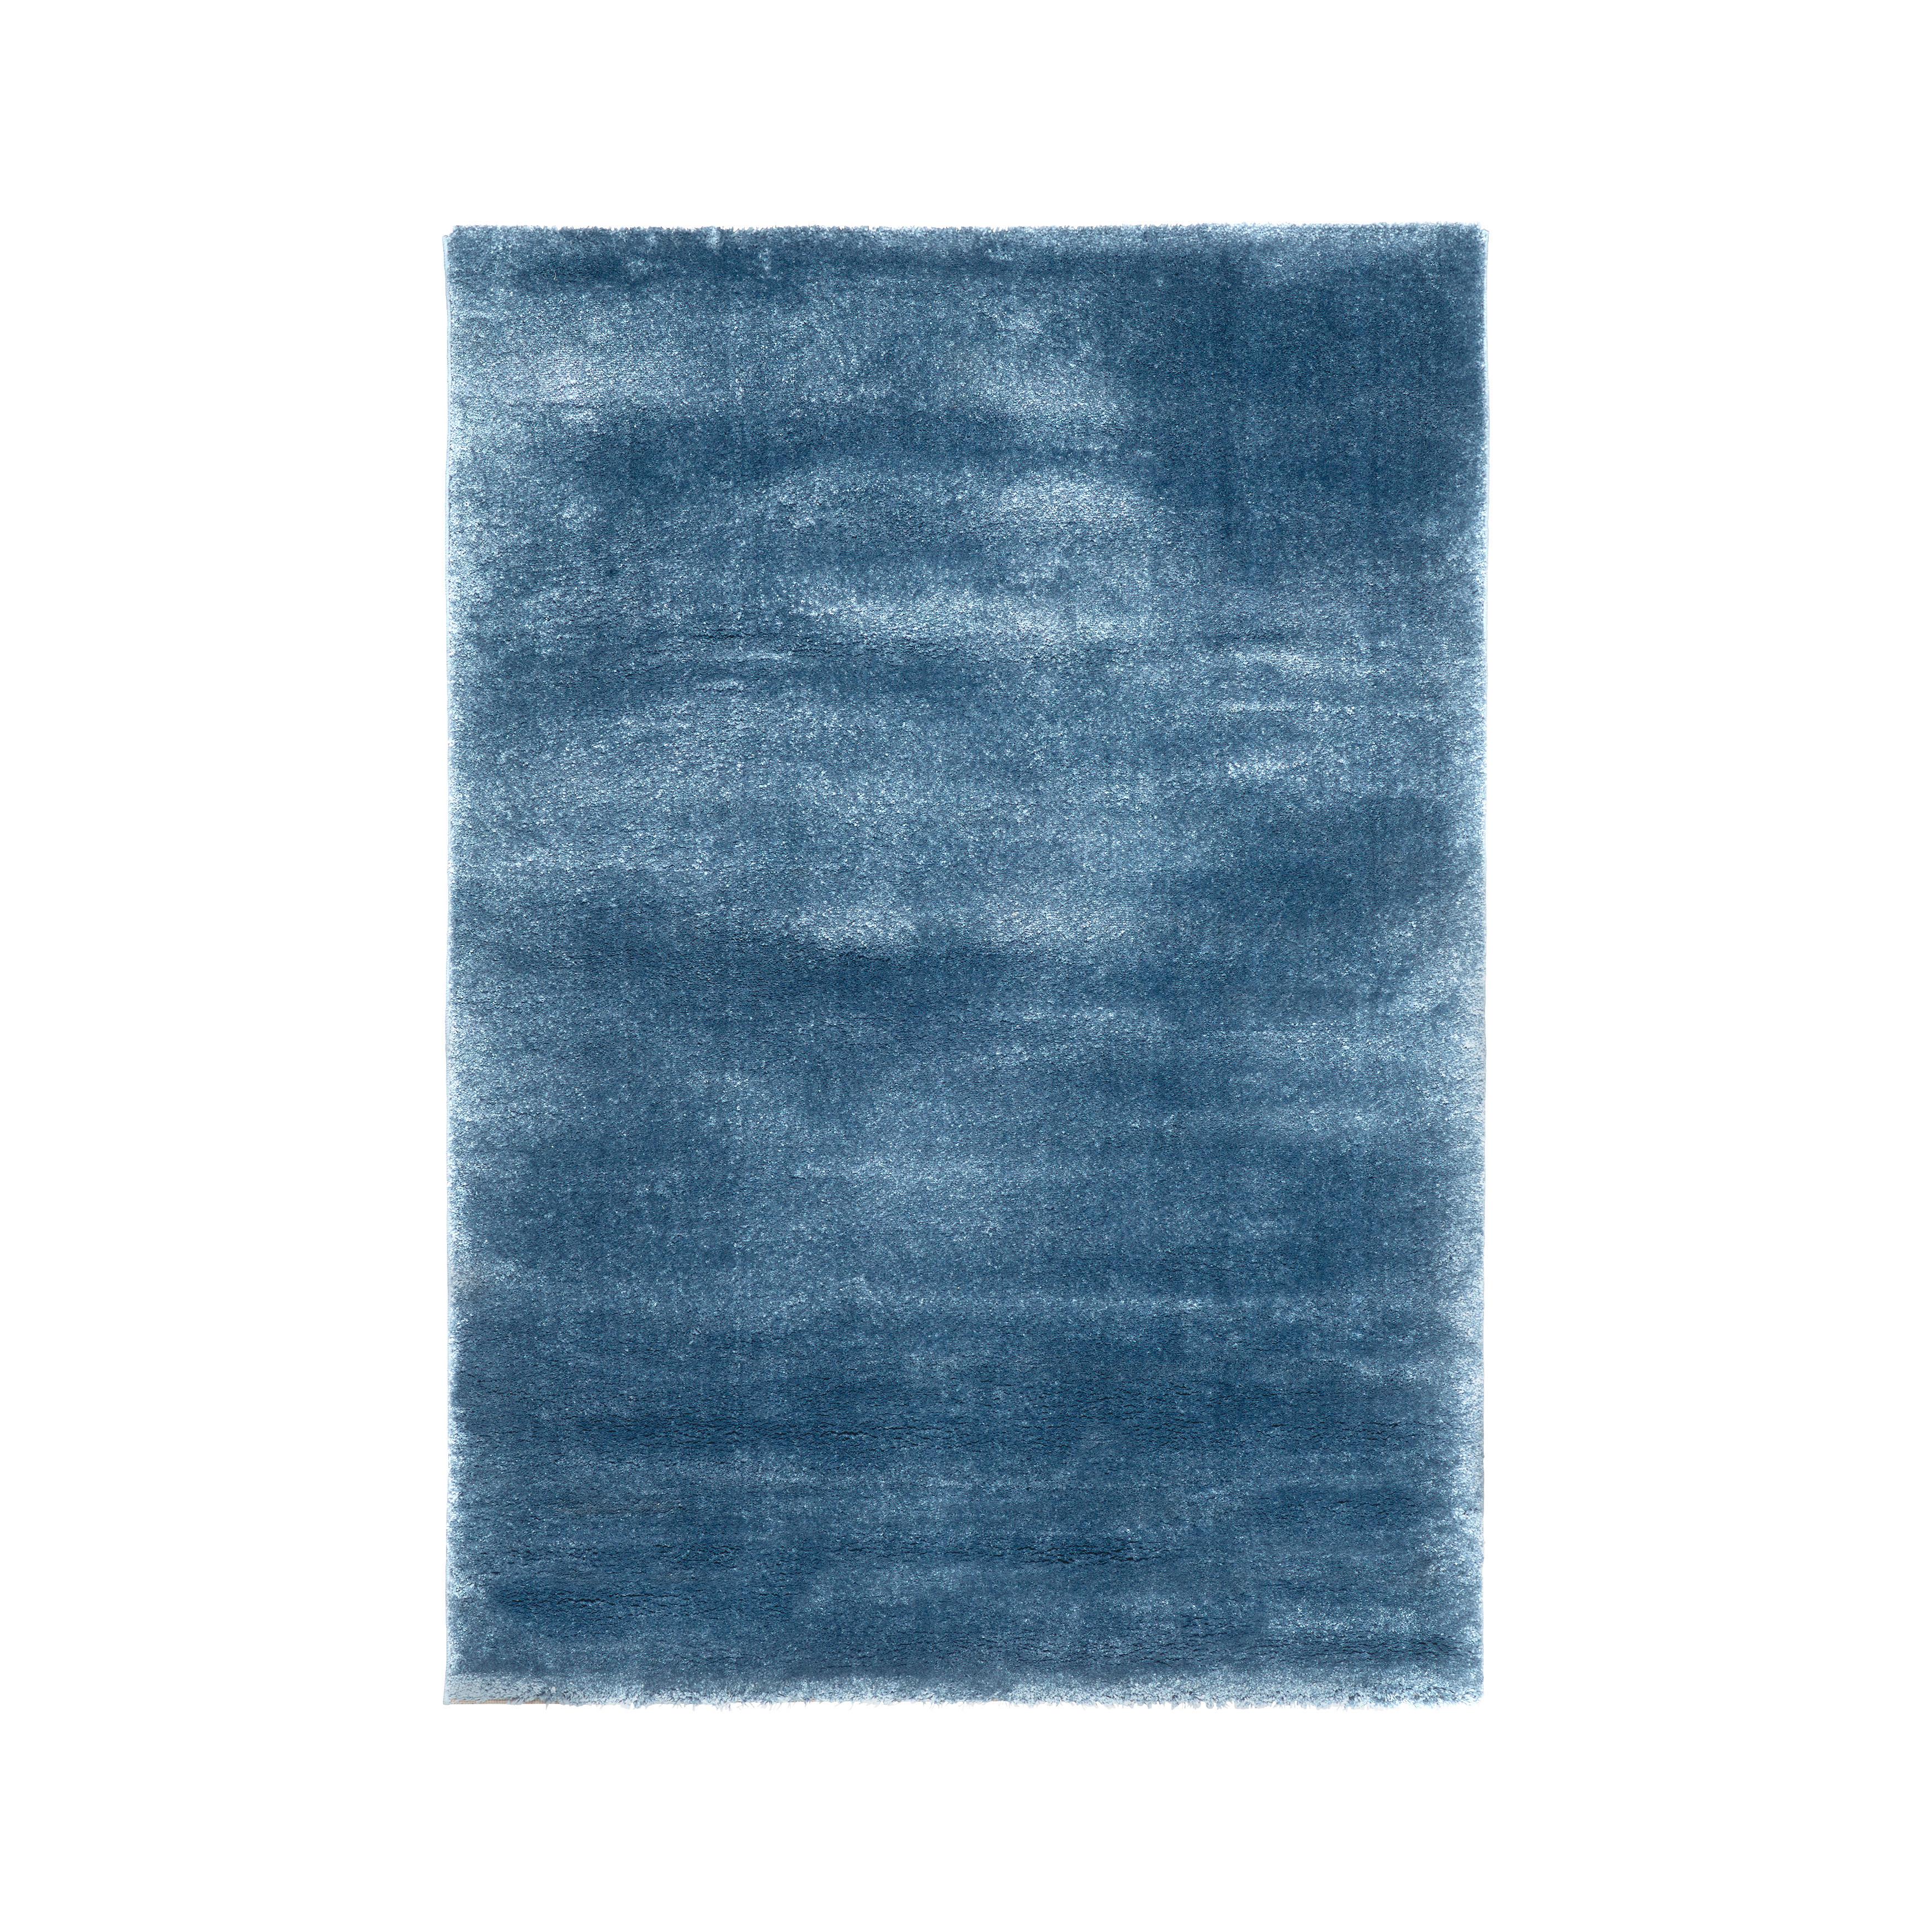 Szőtt Szőnyeg Rubin - Sötétkék, Natur, Textil (120/170cm) - Modern Living